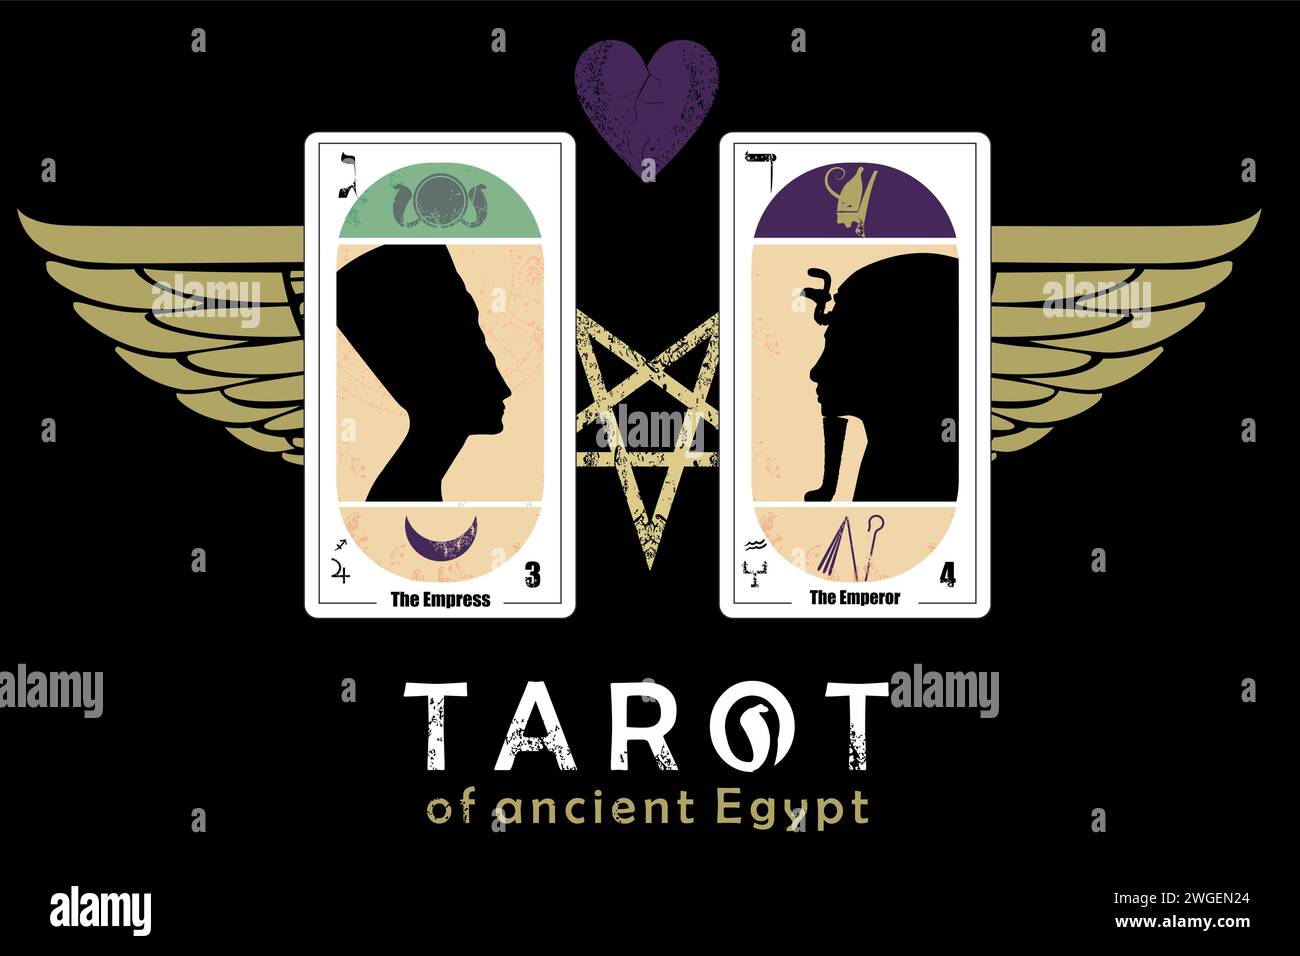 Tarot de l'Egypte ancienne. T-shirt design des cartes appelé l'impératrice et l'empereur avec une étoile, des ailes et un coeur Illustration de Vecteur